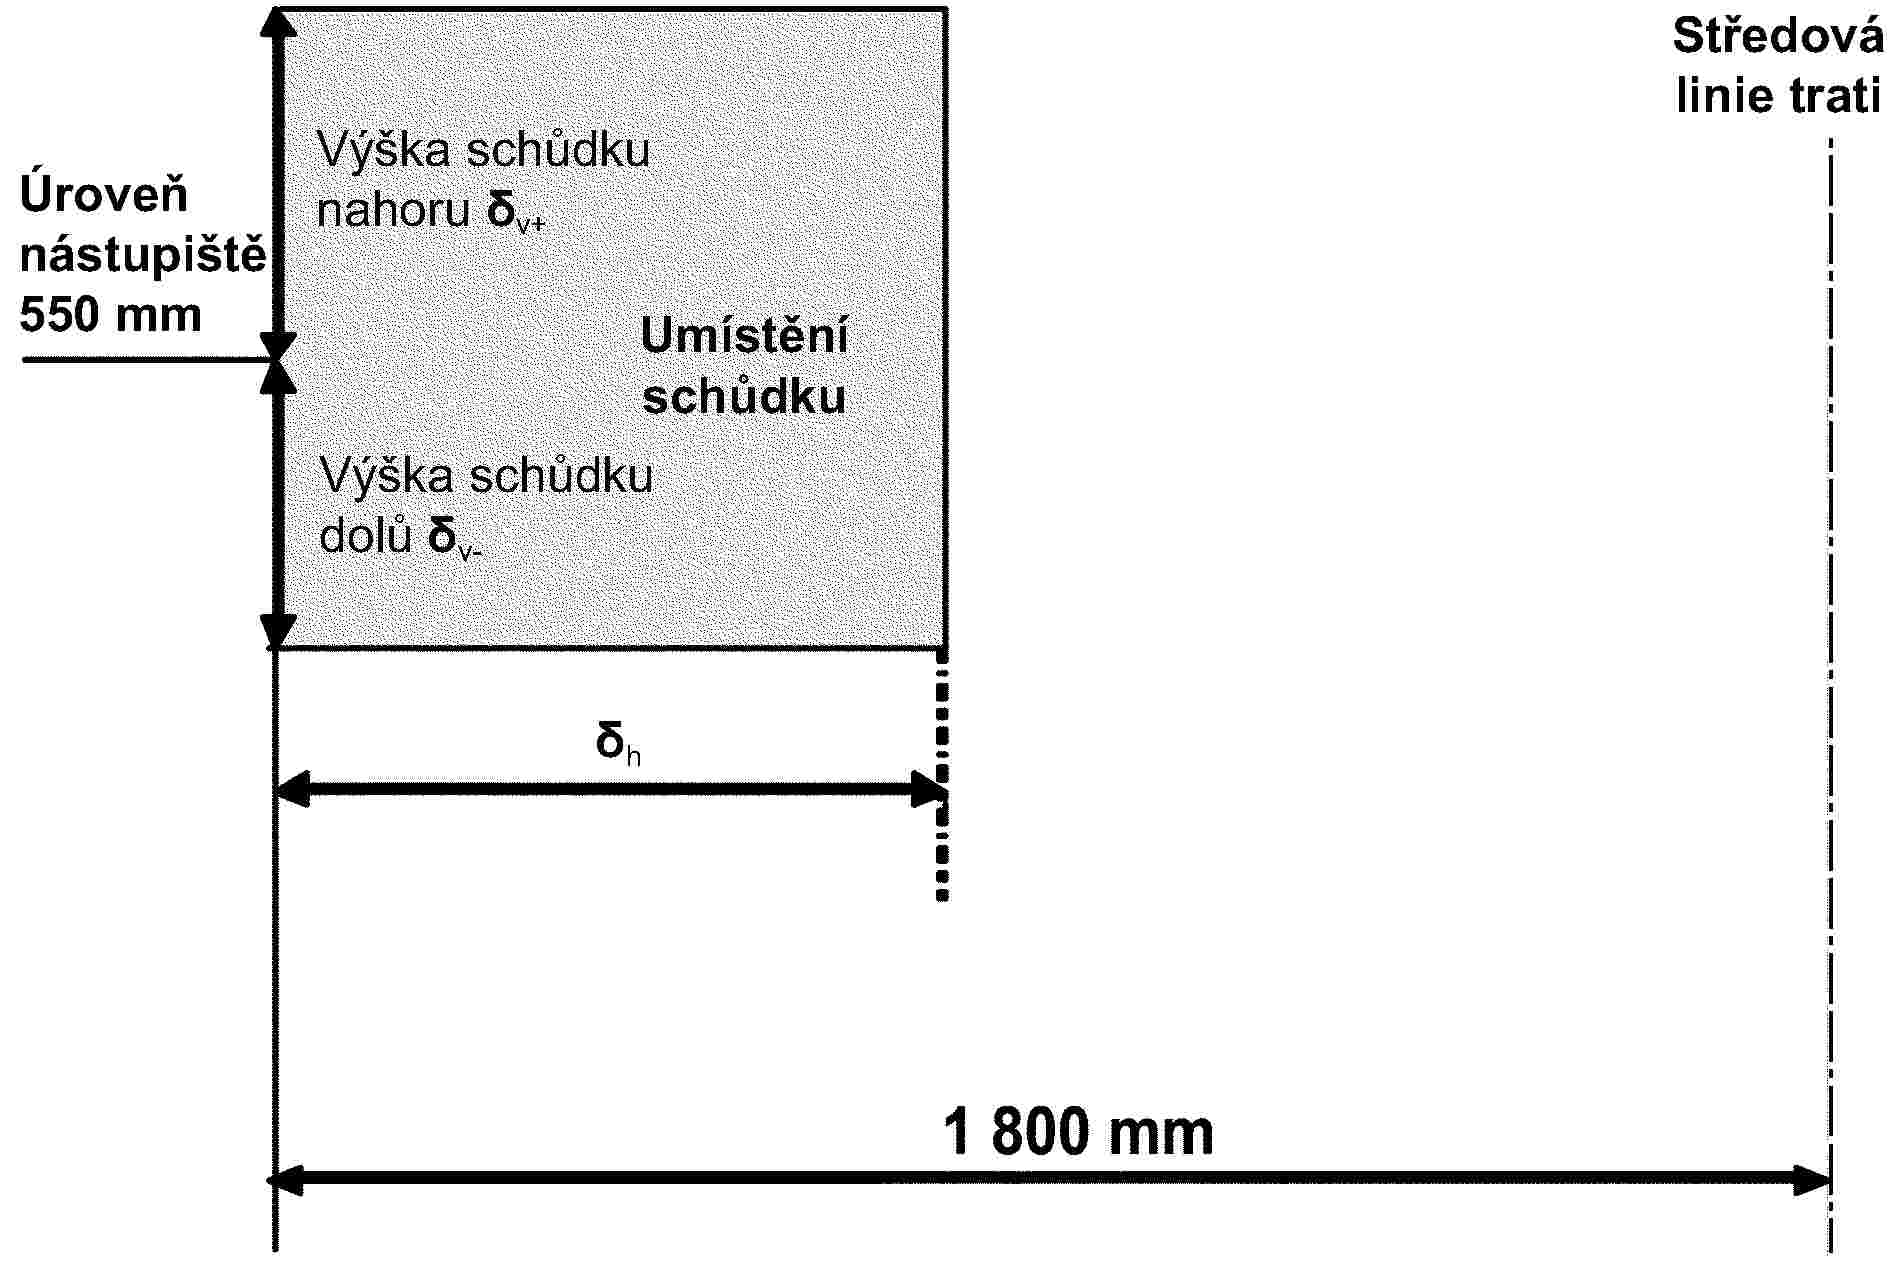 Úroveň nástupiště 550 mmVýška schůdku nahoru δv+Umístění schůdkuVýška schůdku dolů δv-δhStředová linie trati